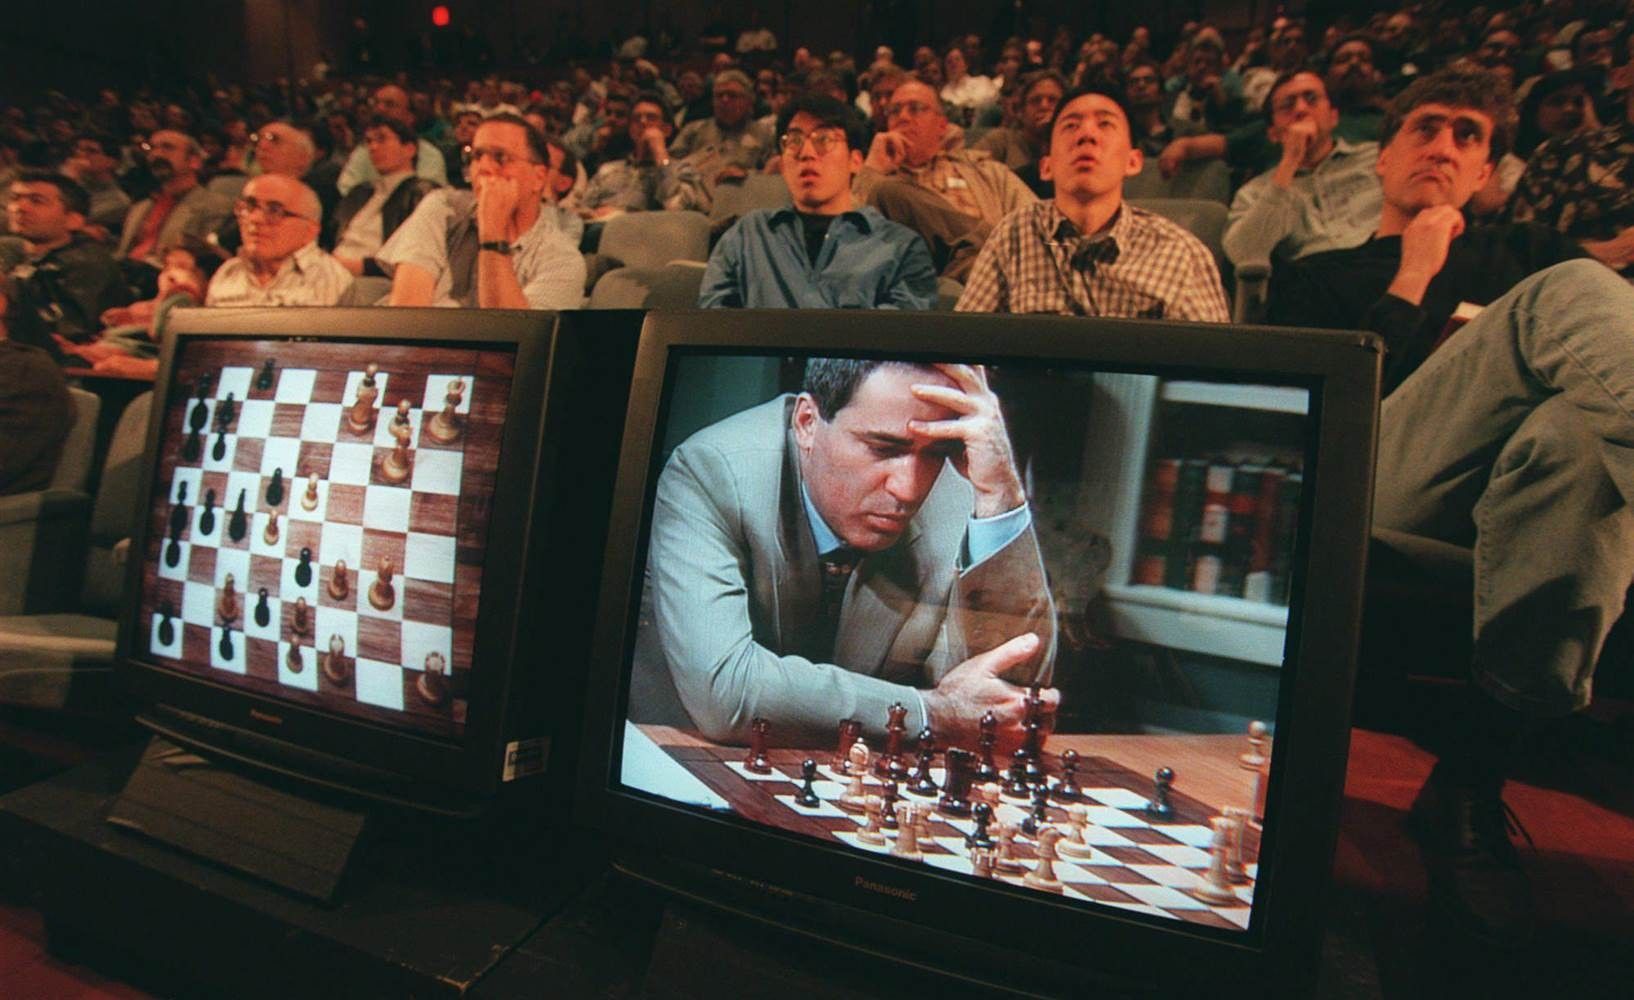 Abbildung 2: Sechstes und letztes Spiel im Rematch zwischen Schachweltmeister Garry Kasparov und IBM-Supercomputer Deep Blue, New York, 1997